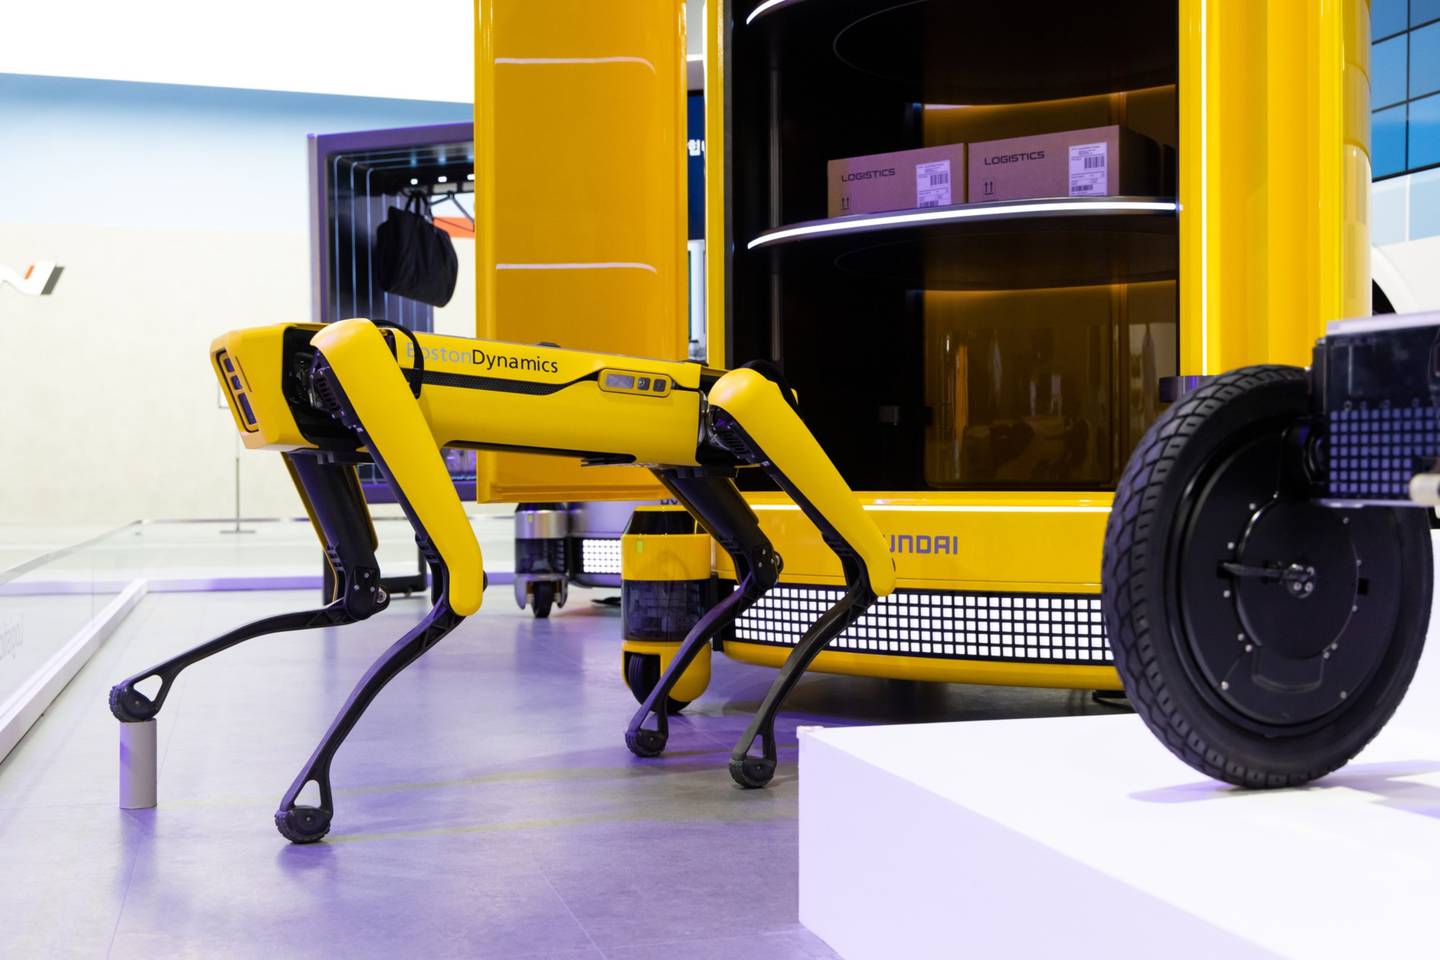 Un robot de Boston Dynamics en el Salón Internacional del Automóvil de Busan, Corea del Sur, el jueves 14 de julio de 2022.